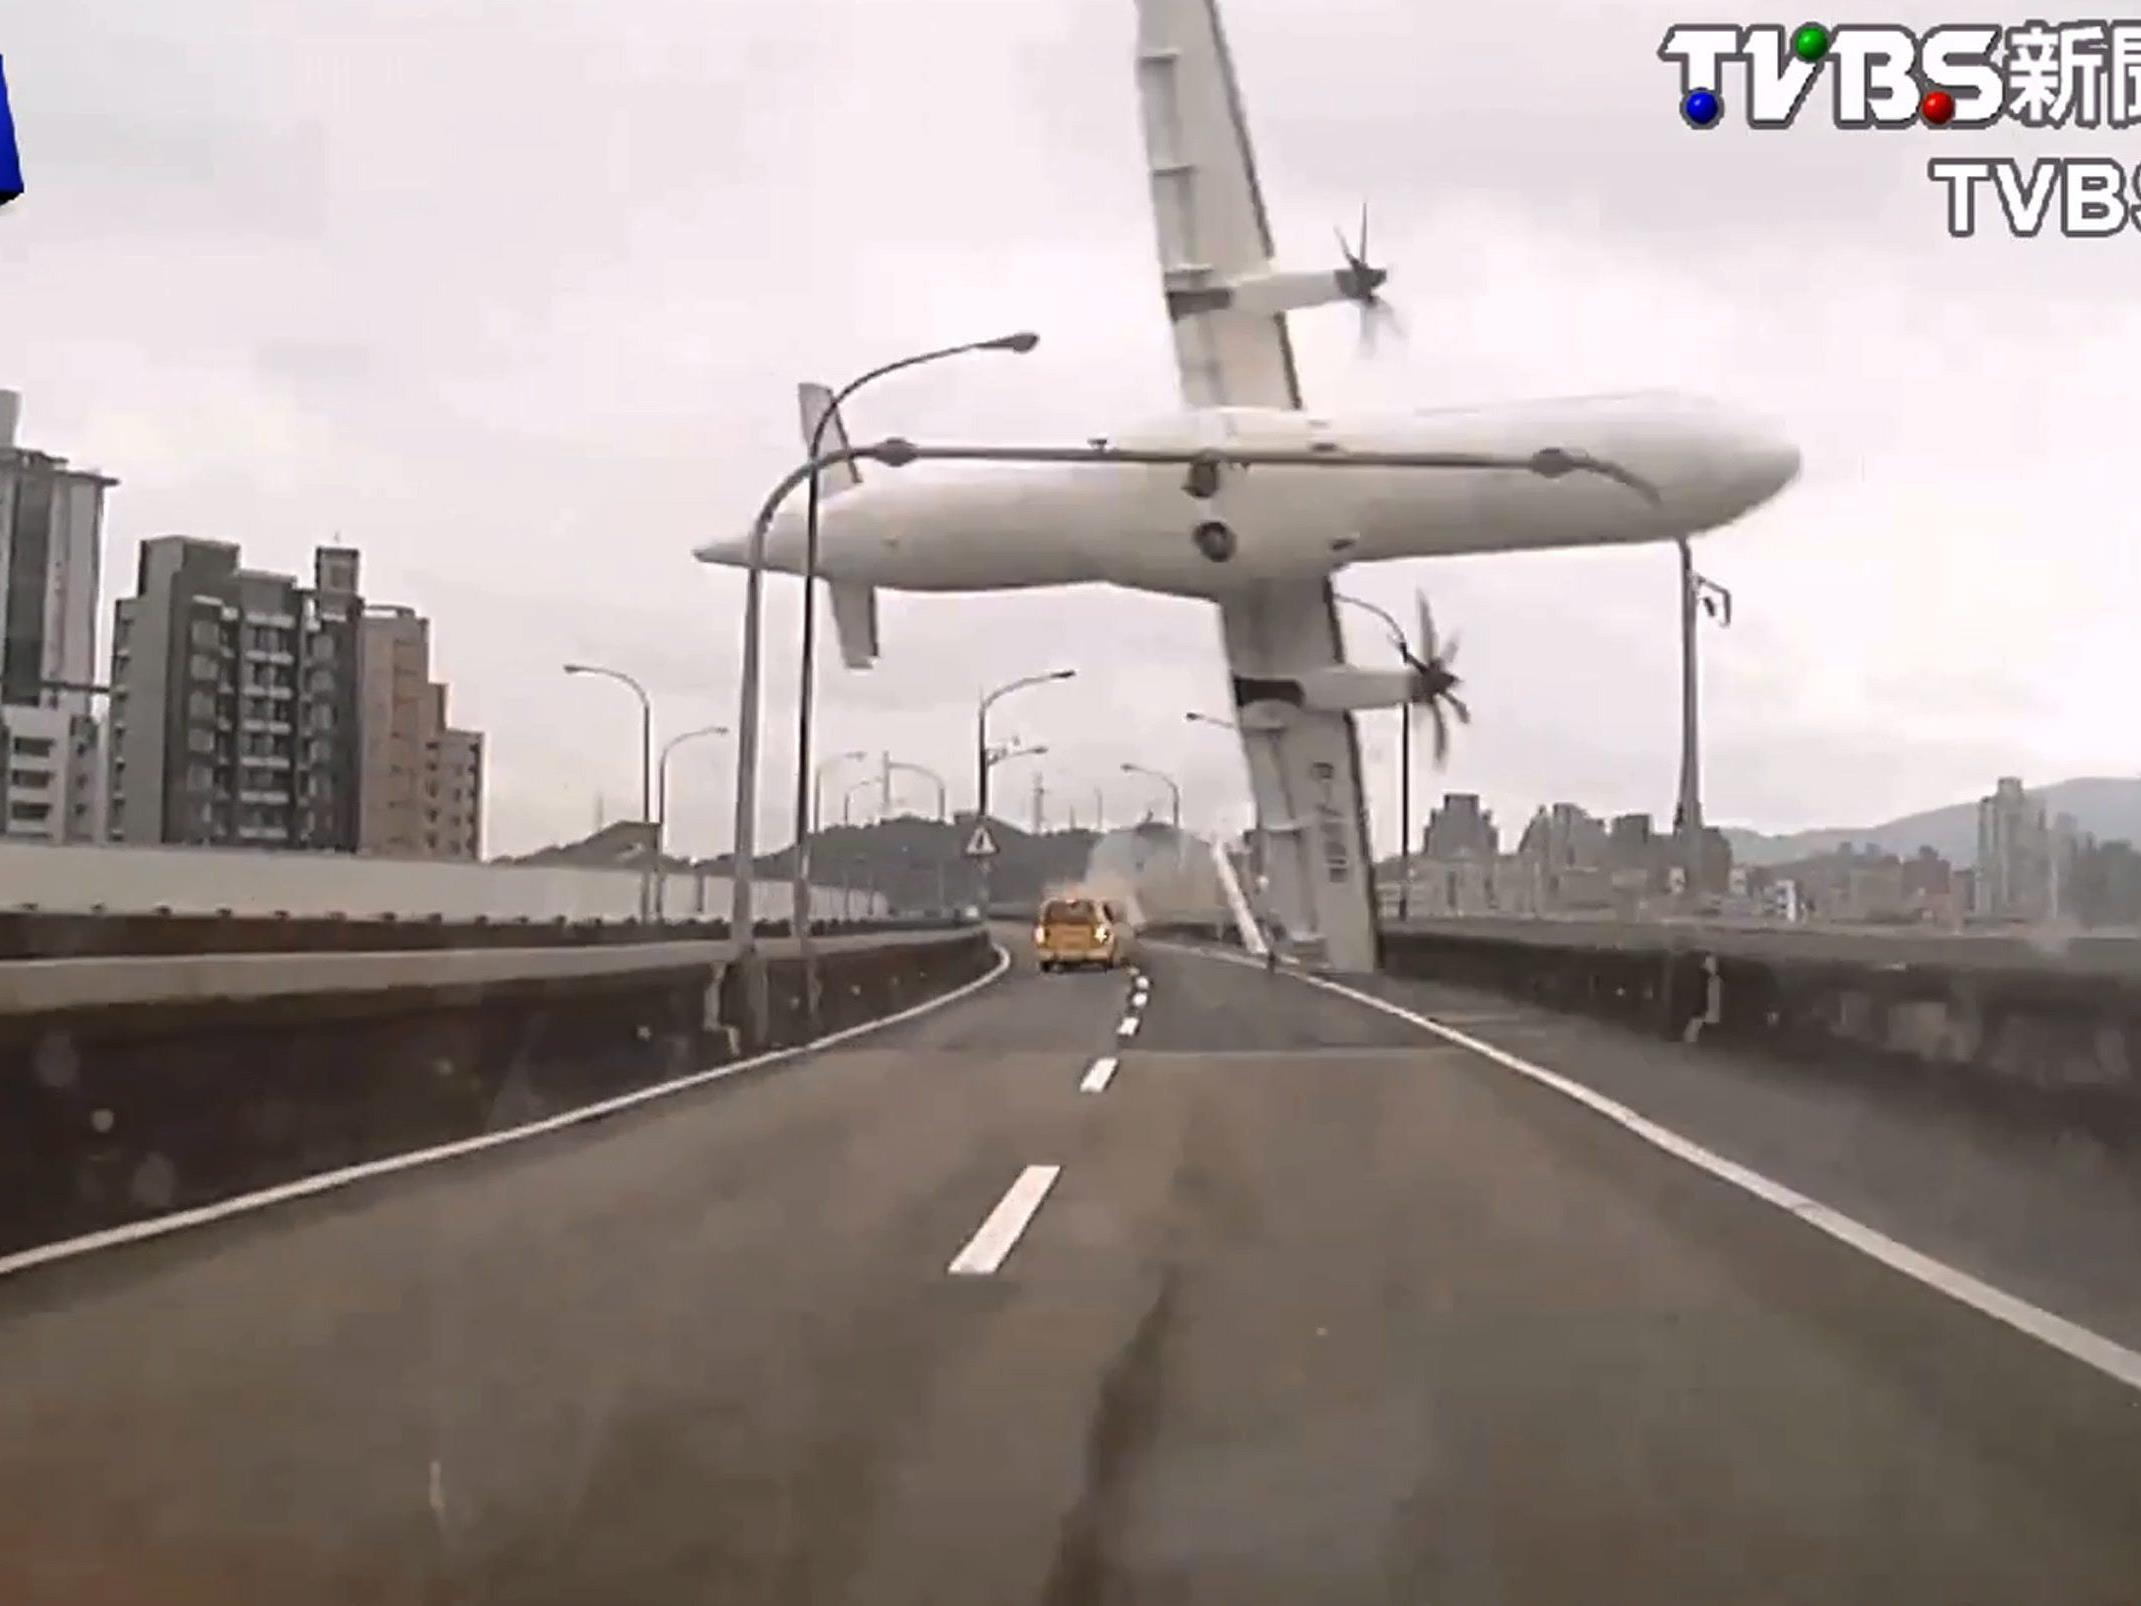 Die Ursache für den TransAsia-Flugzeugabsturz in Taiwan war offenbar ein Pilotenfehler.